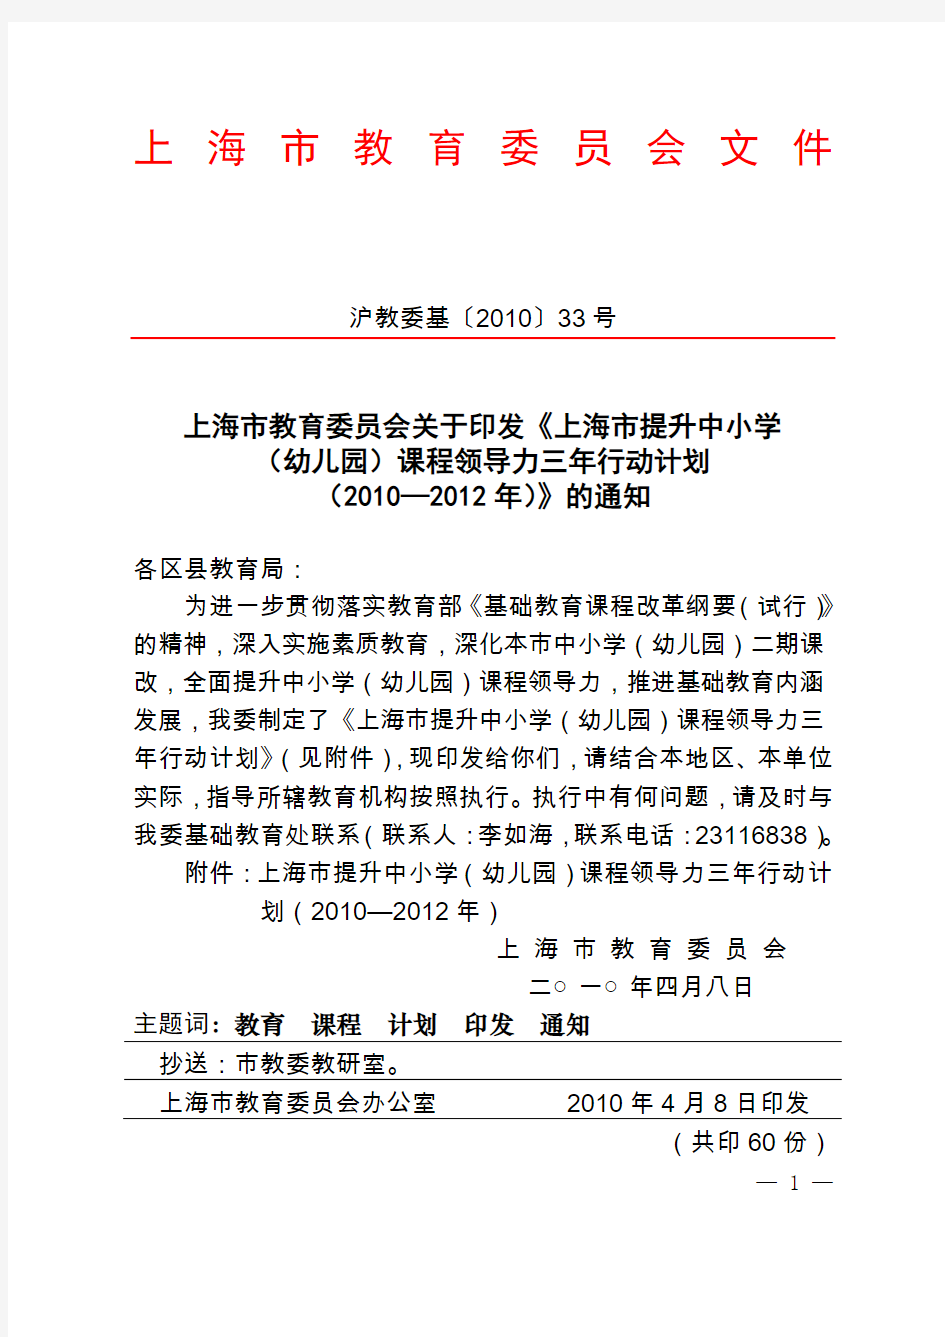 上海市提升中小学(幼儿园)课程领导力三年行动计划